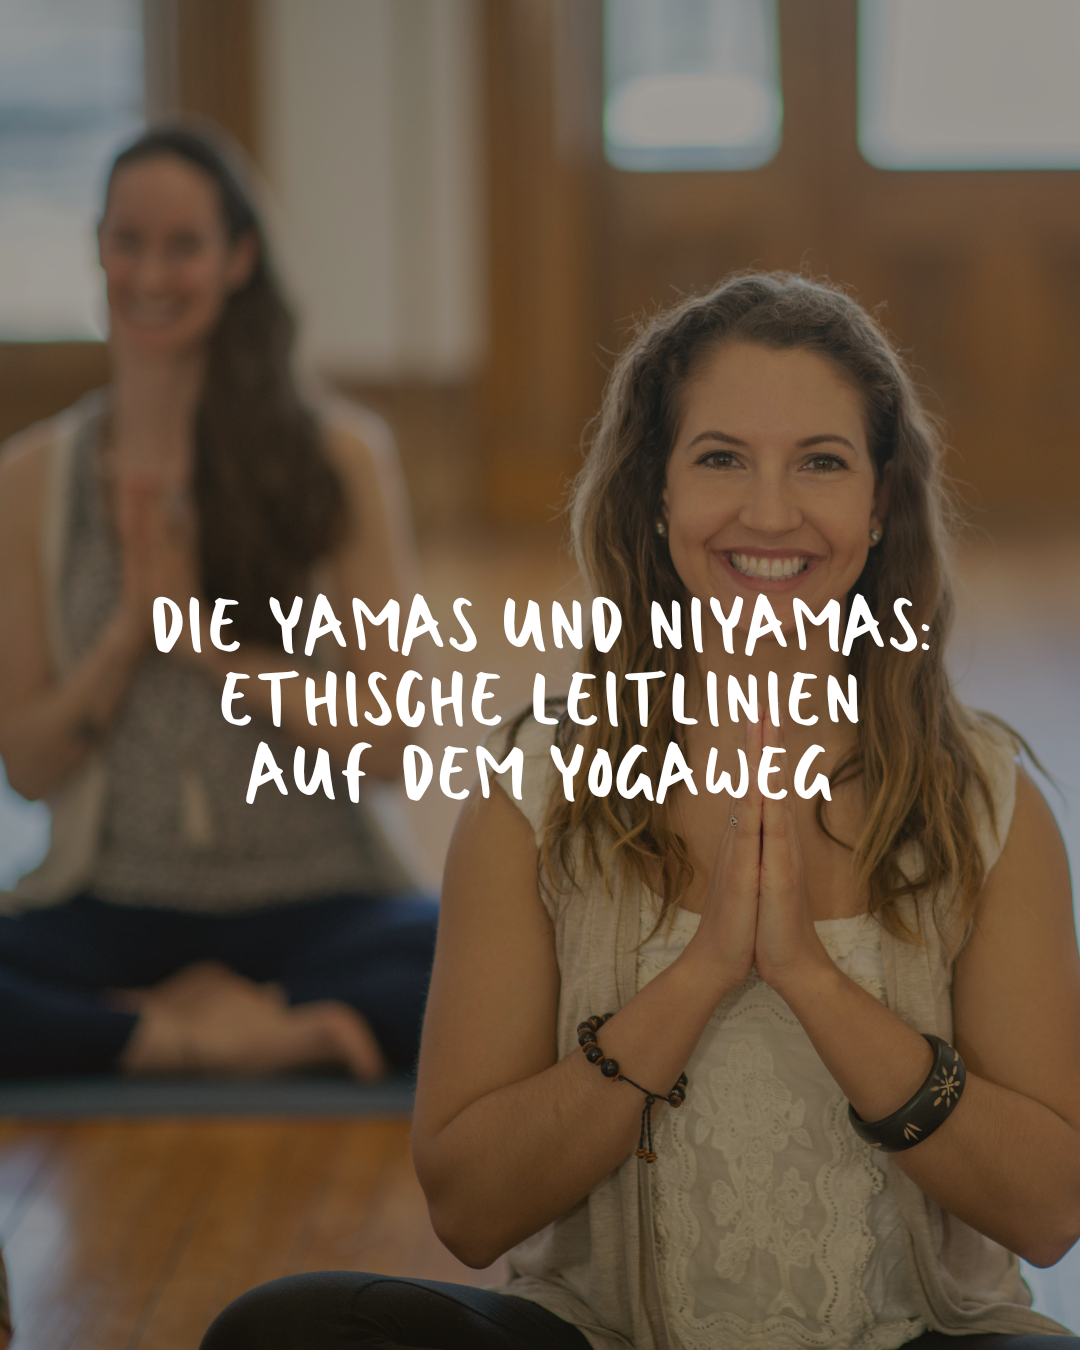 Die Yamas und Niyamas: Ethische Leitlinien auf dem Yogaweg